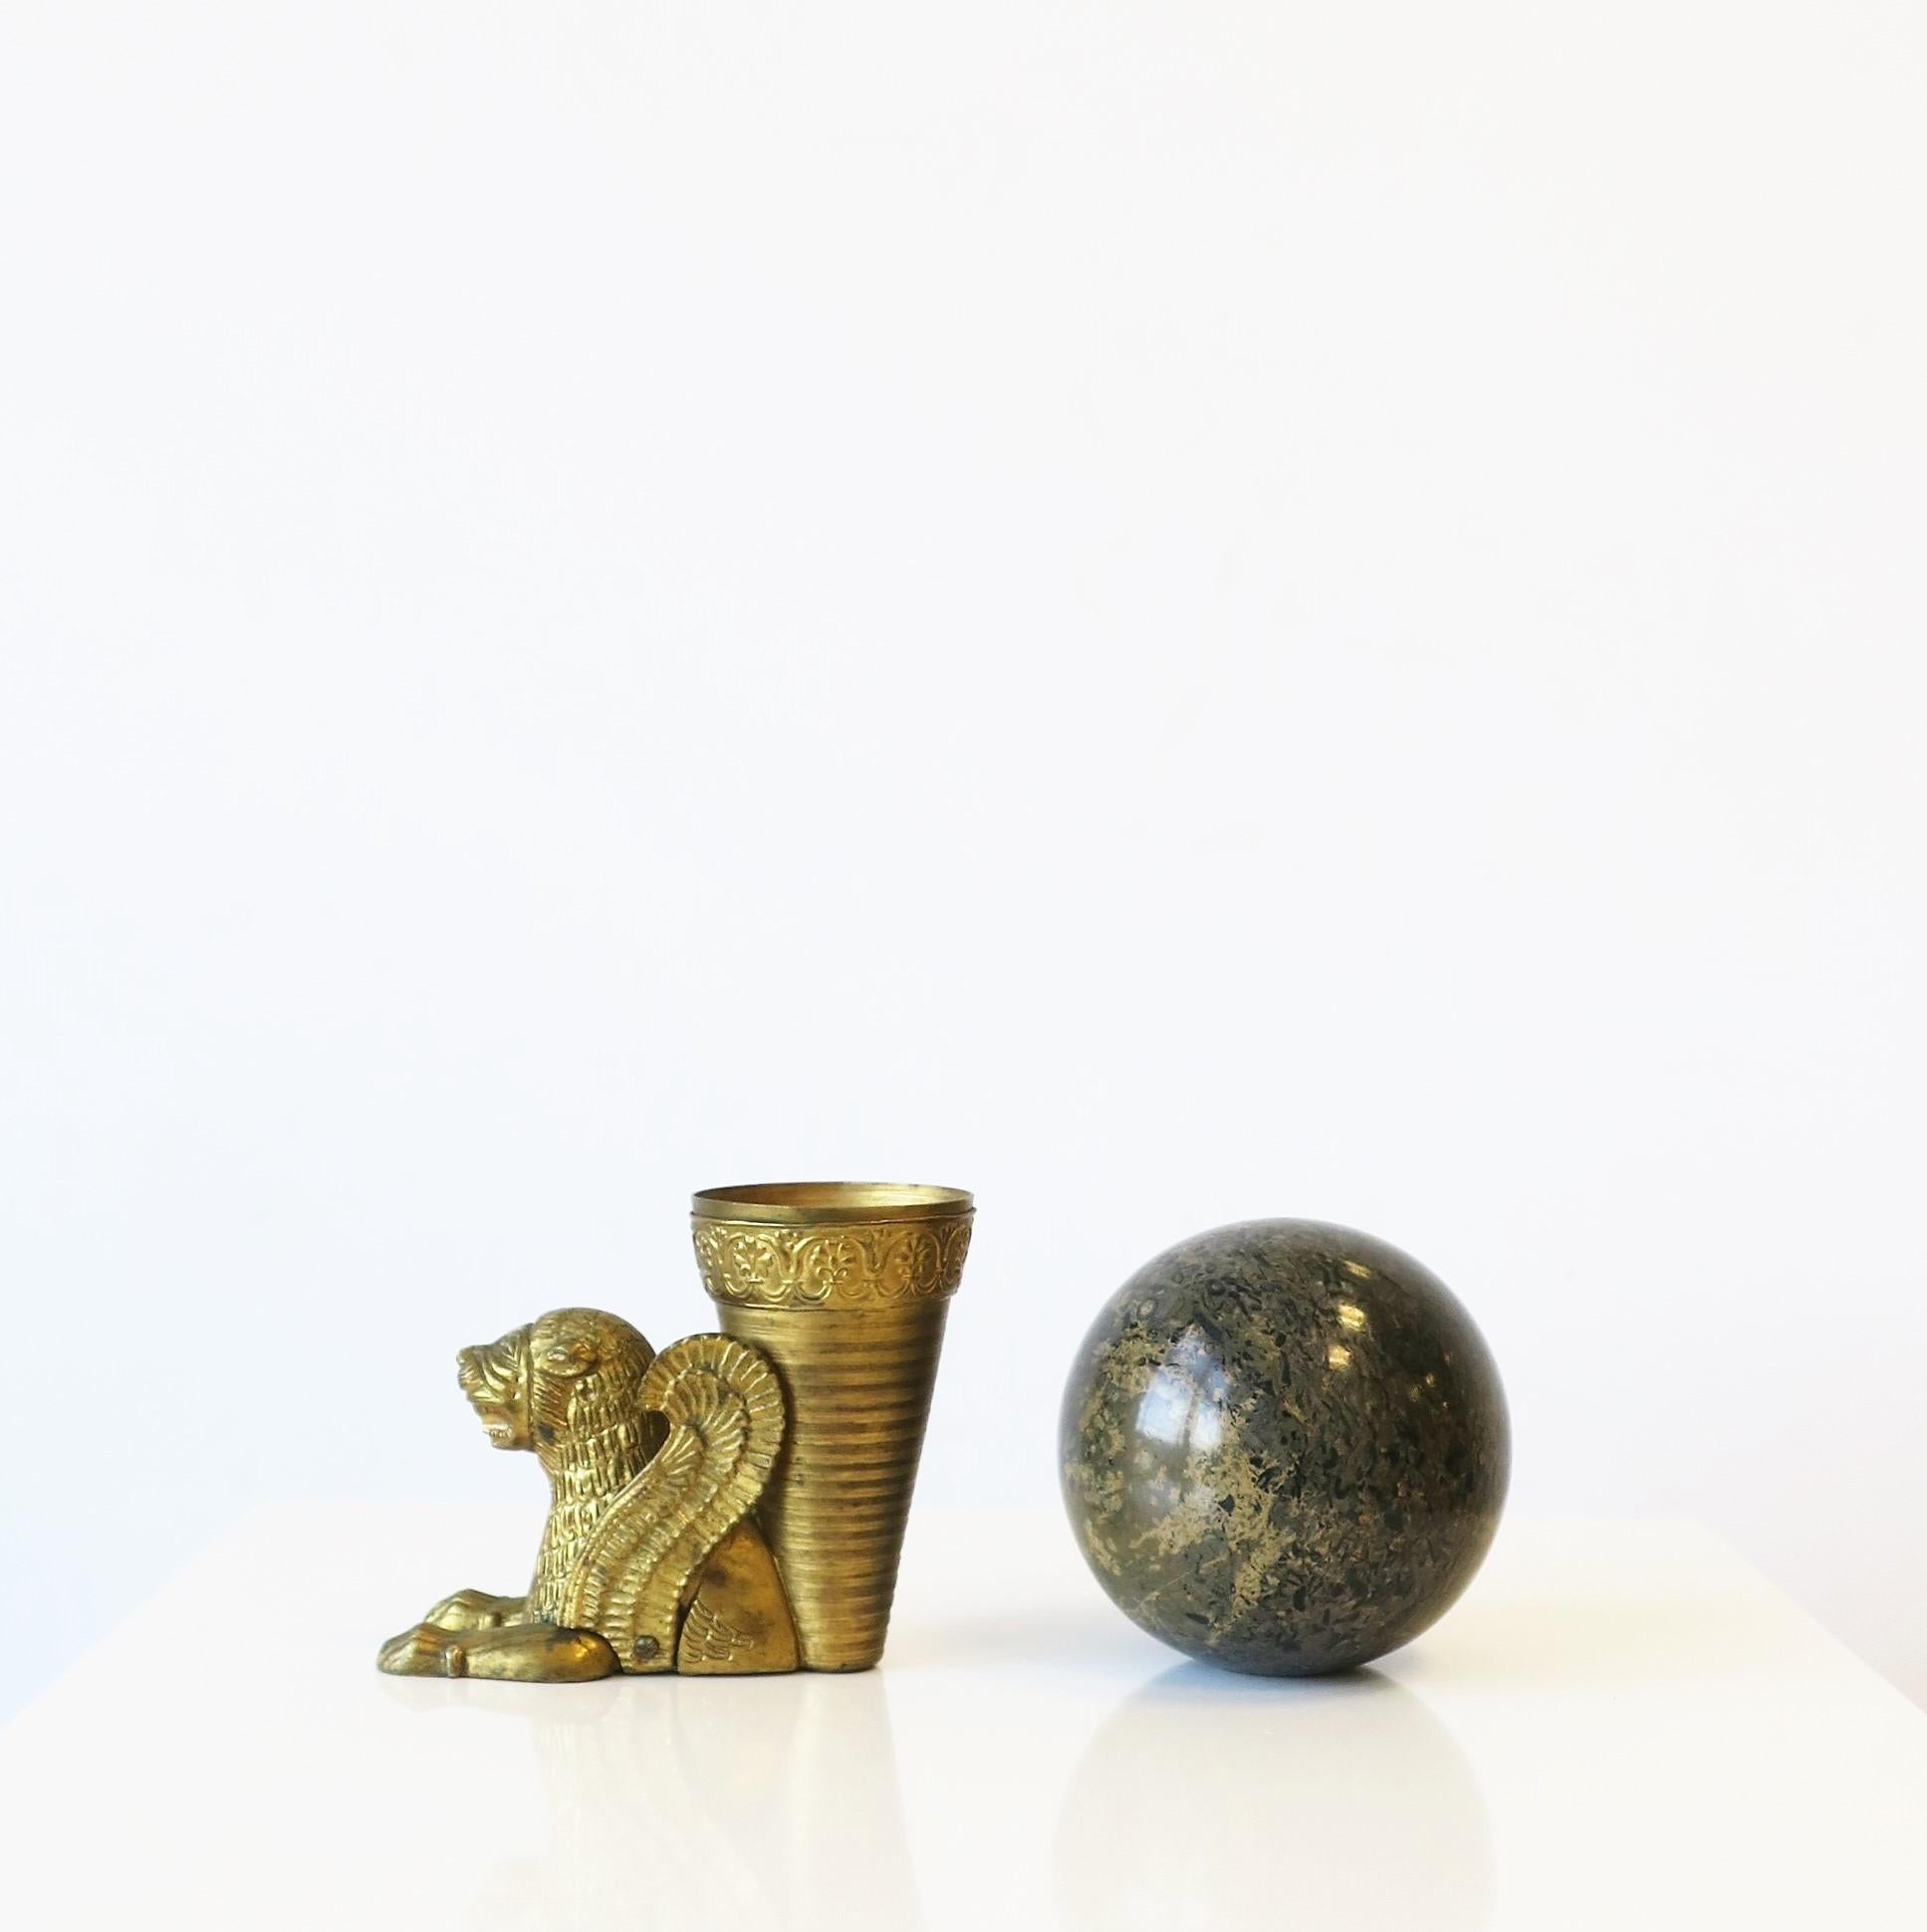 Important vase en bronze doré au lion ou objet décoratif de style néo-égyptien, vers le 20e siècle ou avant. Magnifique comme petit vase avec beaucoup de style, mais aussi comme objet décoratif autonome. Dimensions : 4.5